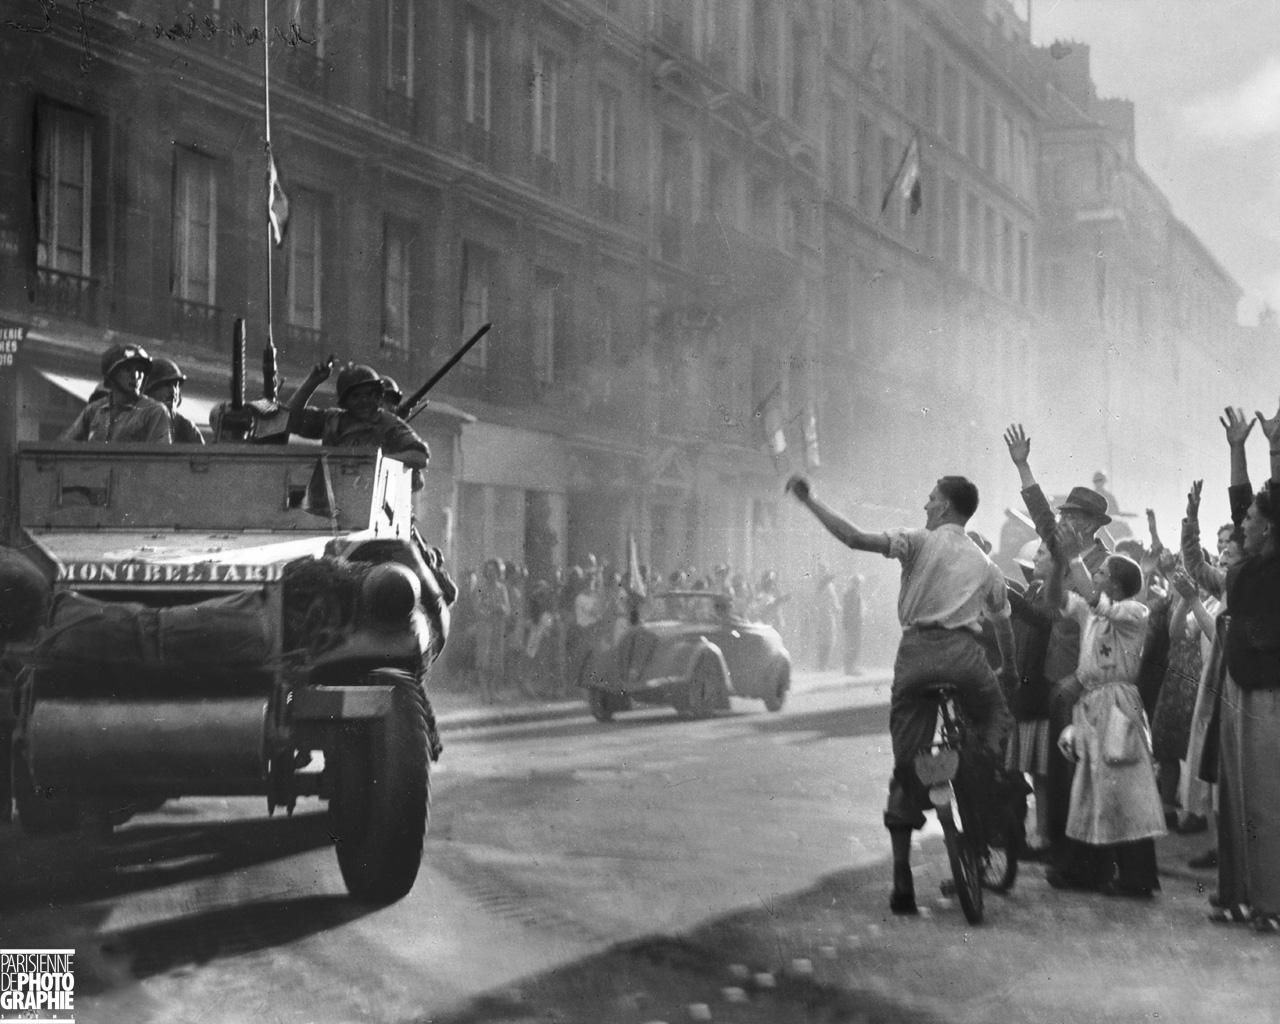 Voyage Avec Leclerc Frais Paris 25 Aout 1944 Rue Guynemer La Division